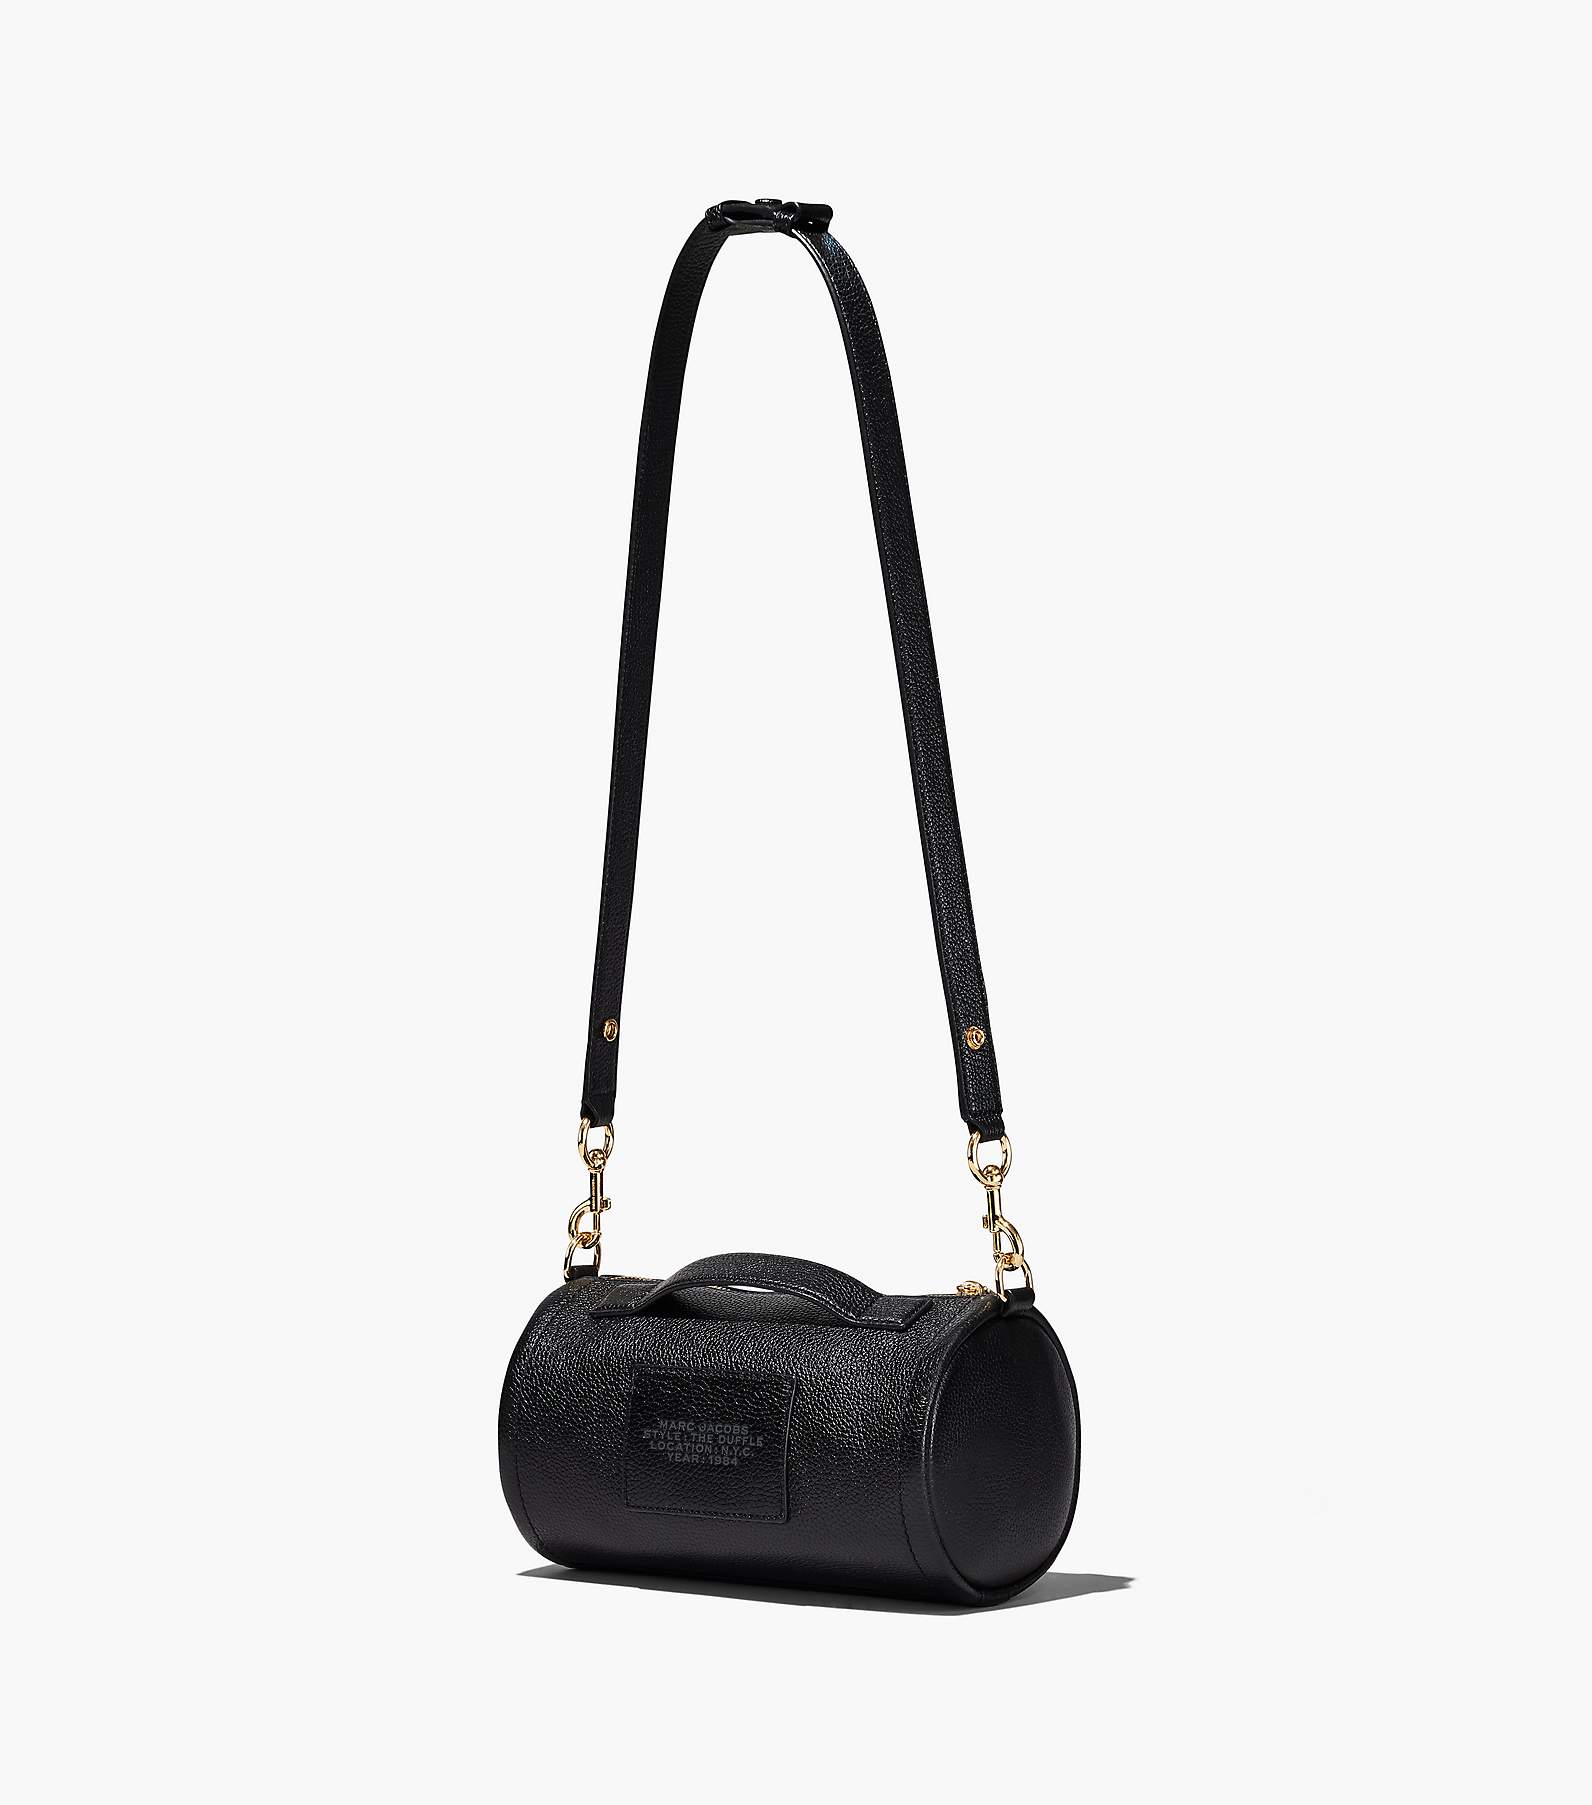 marc jacobs purse black